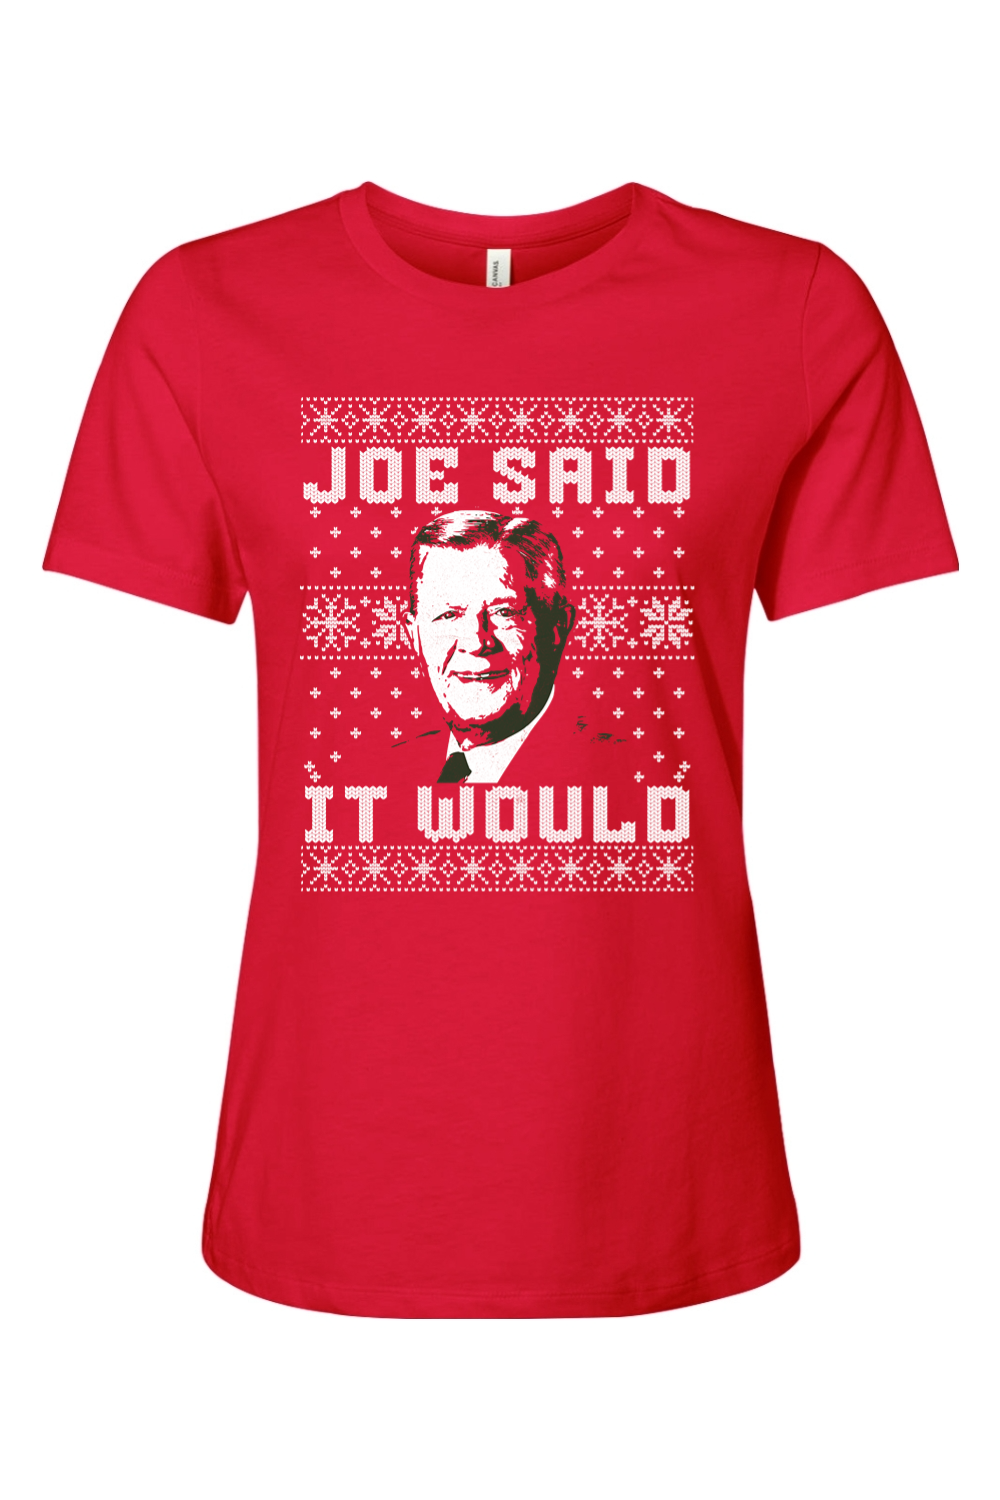 Joe Said it Would - Ugly Christmas Sweater - Ladies Tee - Yinzylvania